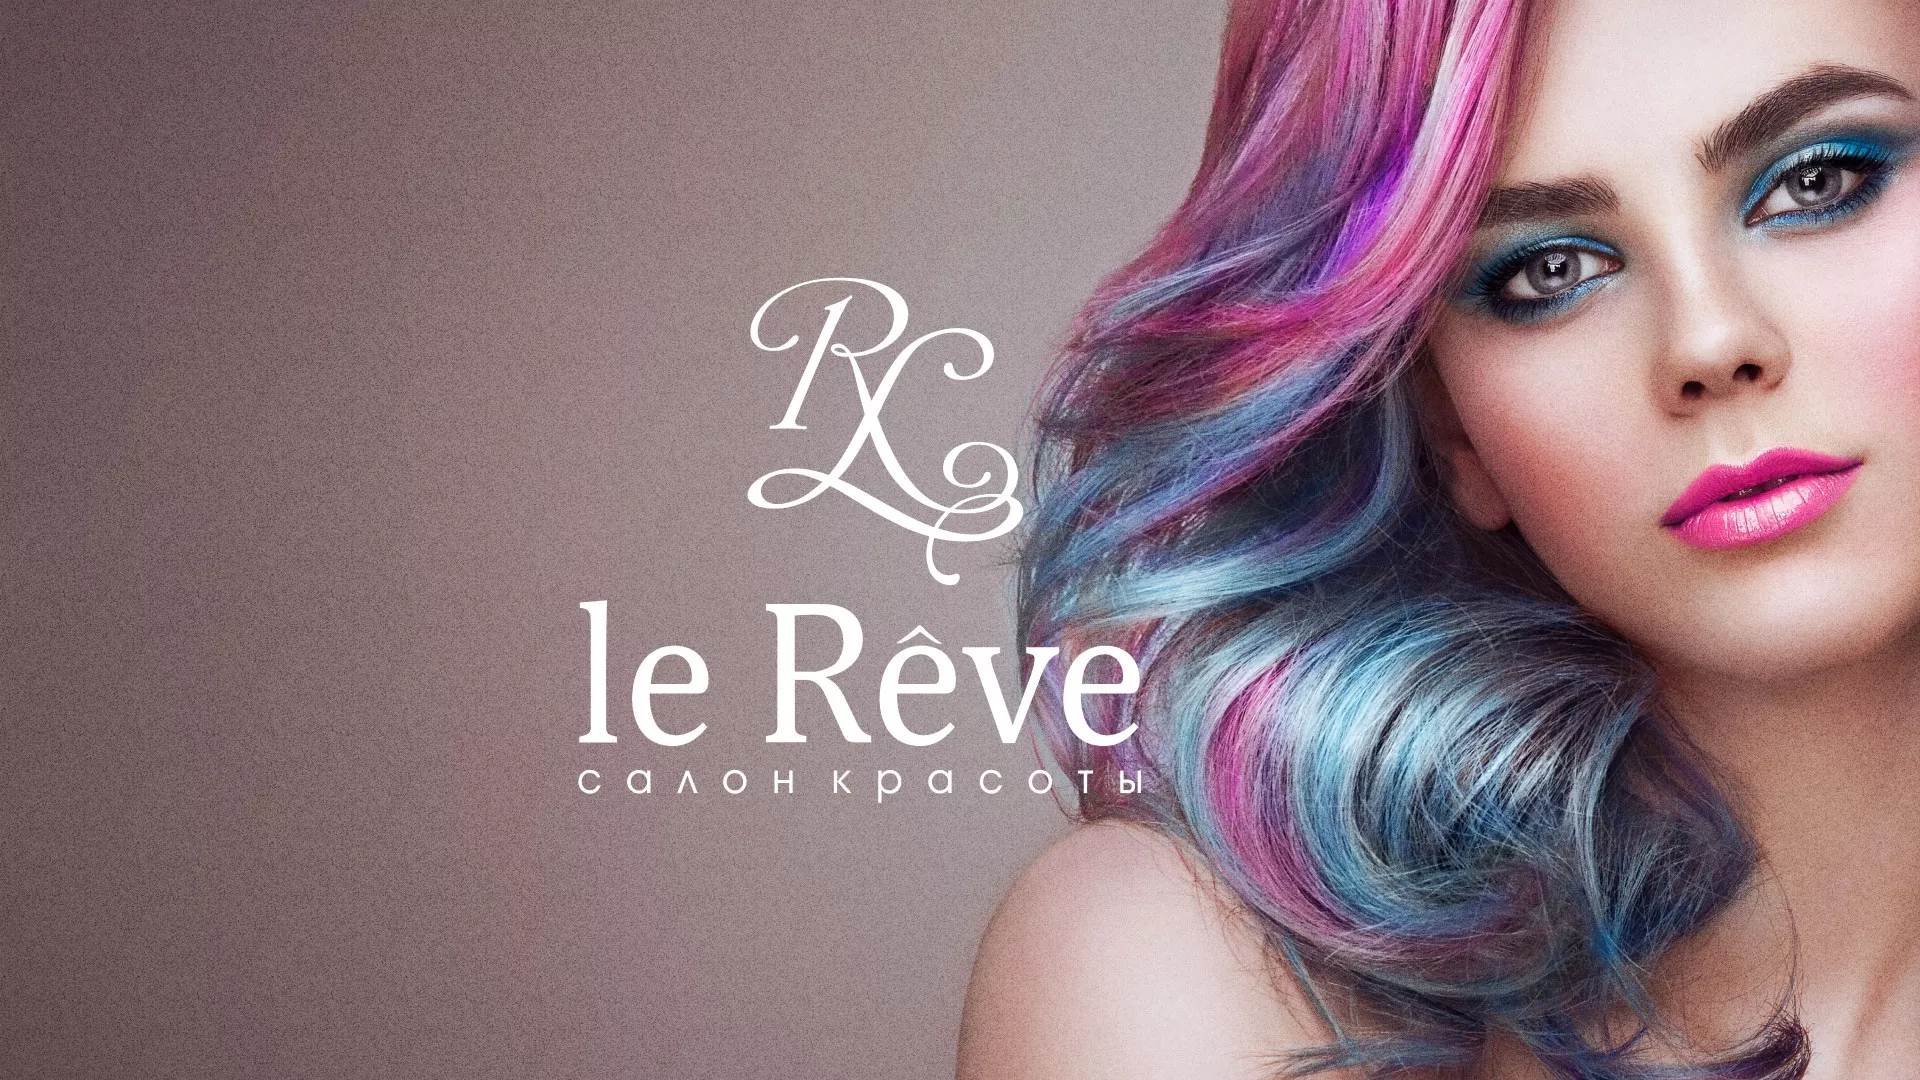 Создание сайта для салона красоты «Le Reve» в Зеленокумске